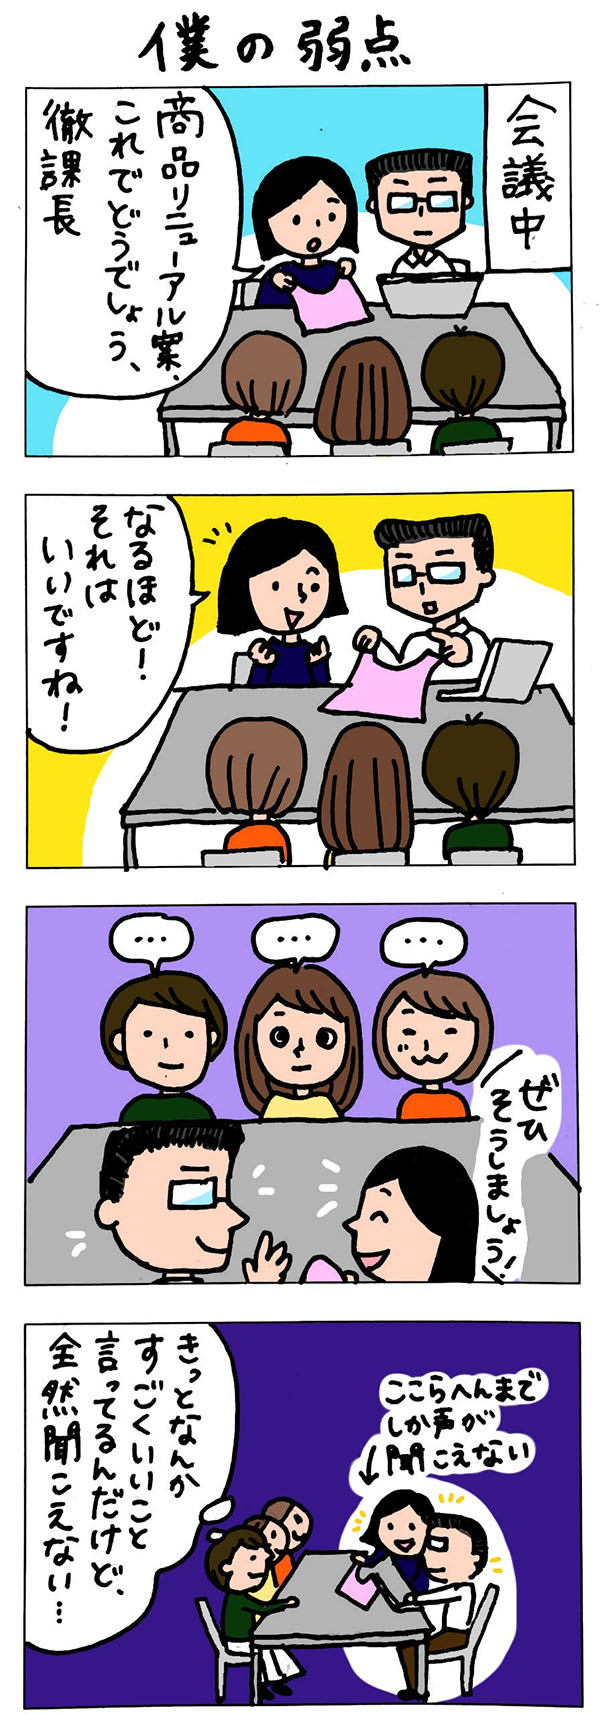 徹がゆくインナー課長4コマ漫画